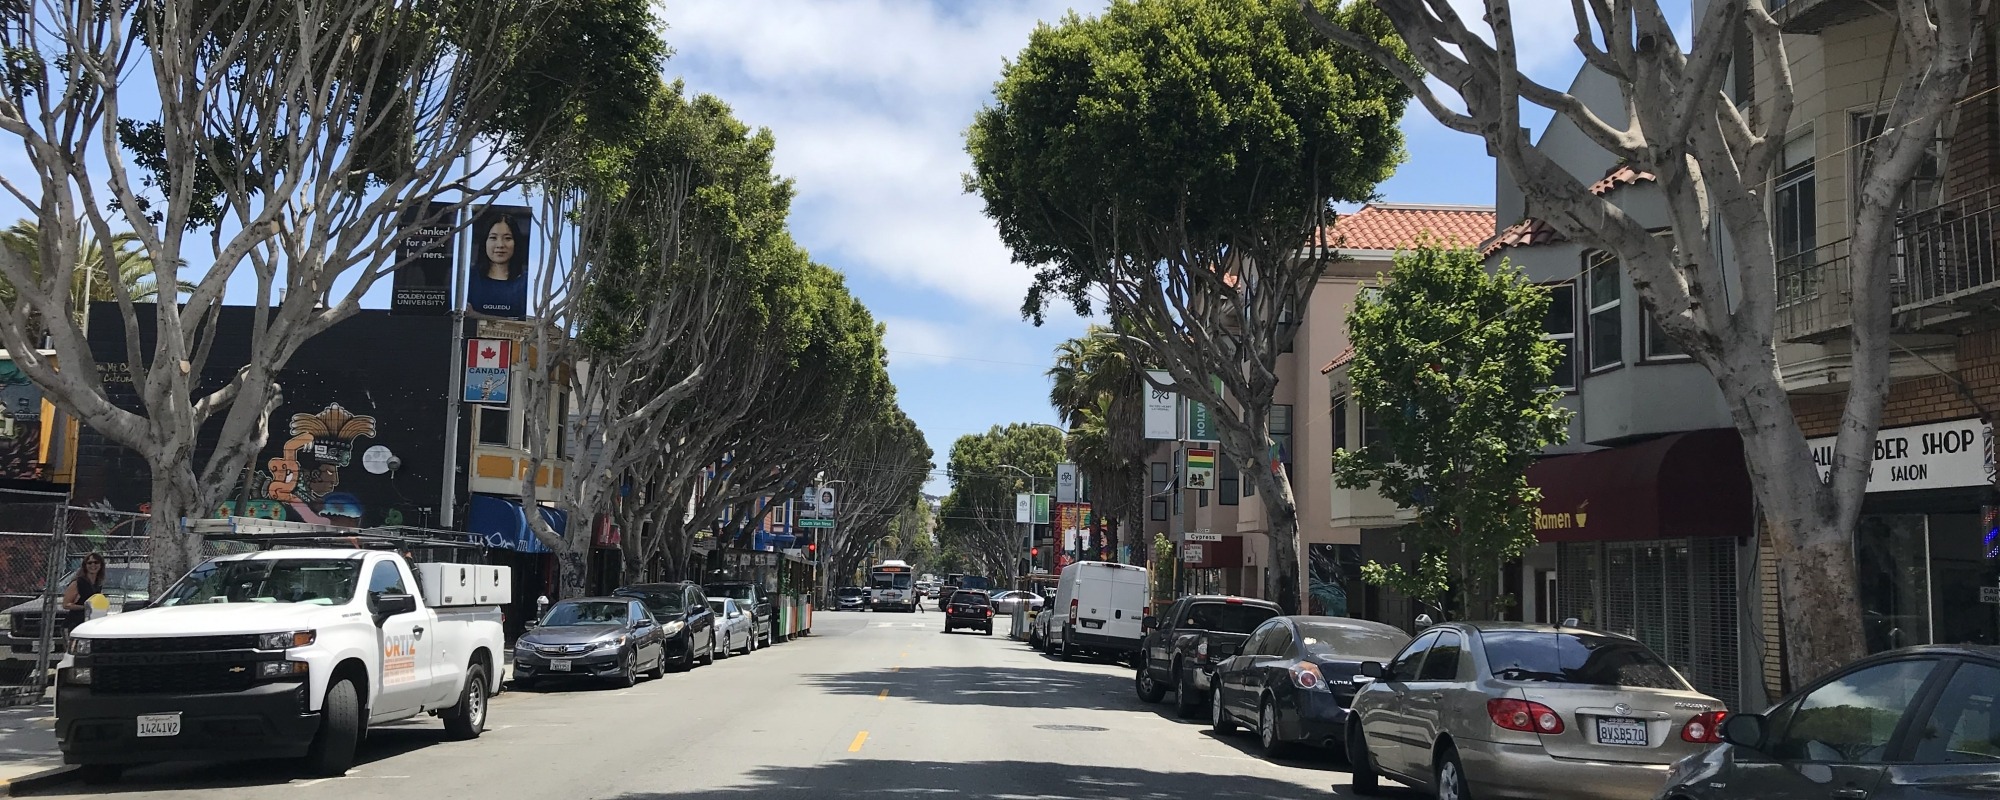 calle 24 street trees